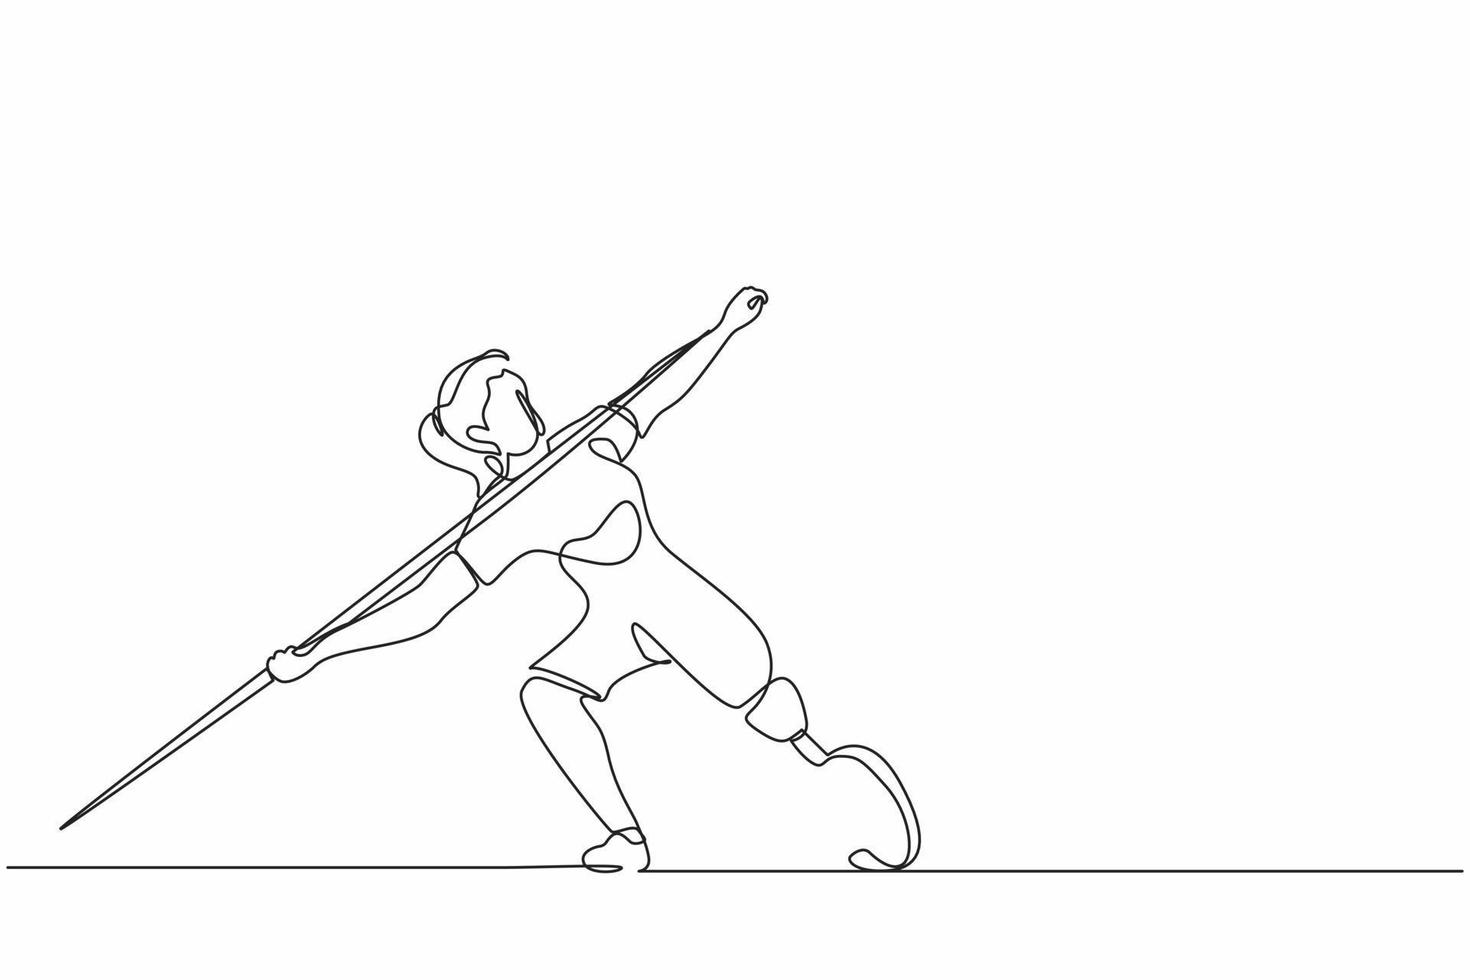 kontinuierliche einzeilige zeichnung behinderter athlet, der speer mit prothesenbein wirft. Behinderte Sportlerin mit amputiertem Fuß. Behindertensport, Behindertenspiele. einzeiliges zeichnen design vektorgrafik vektor